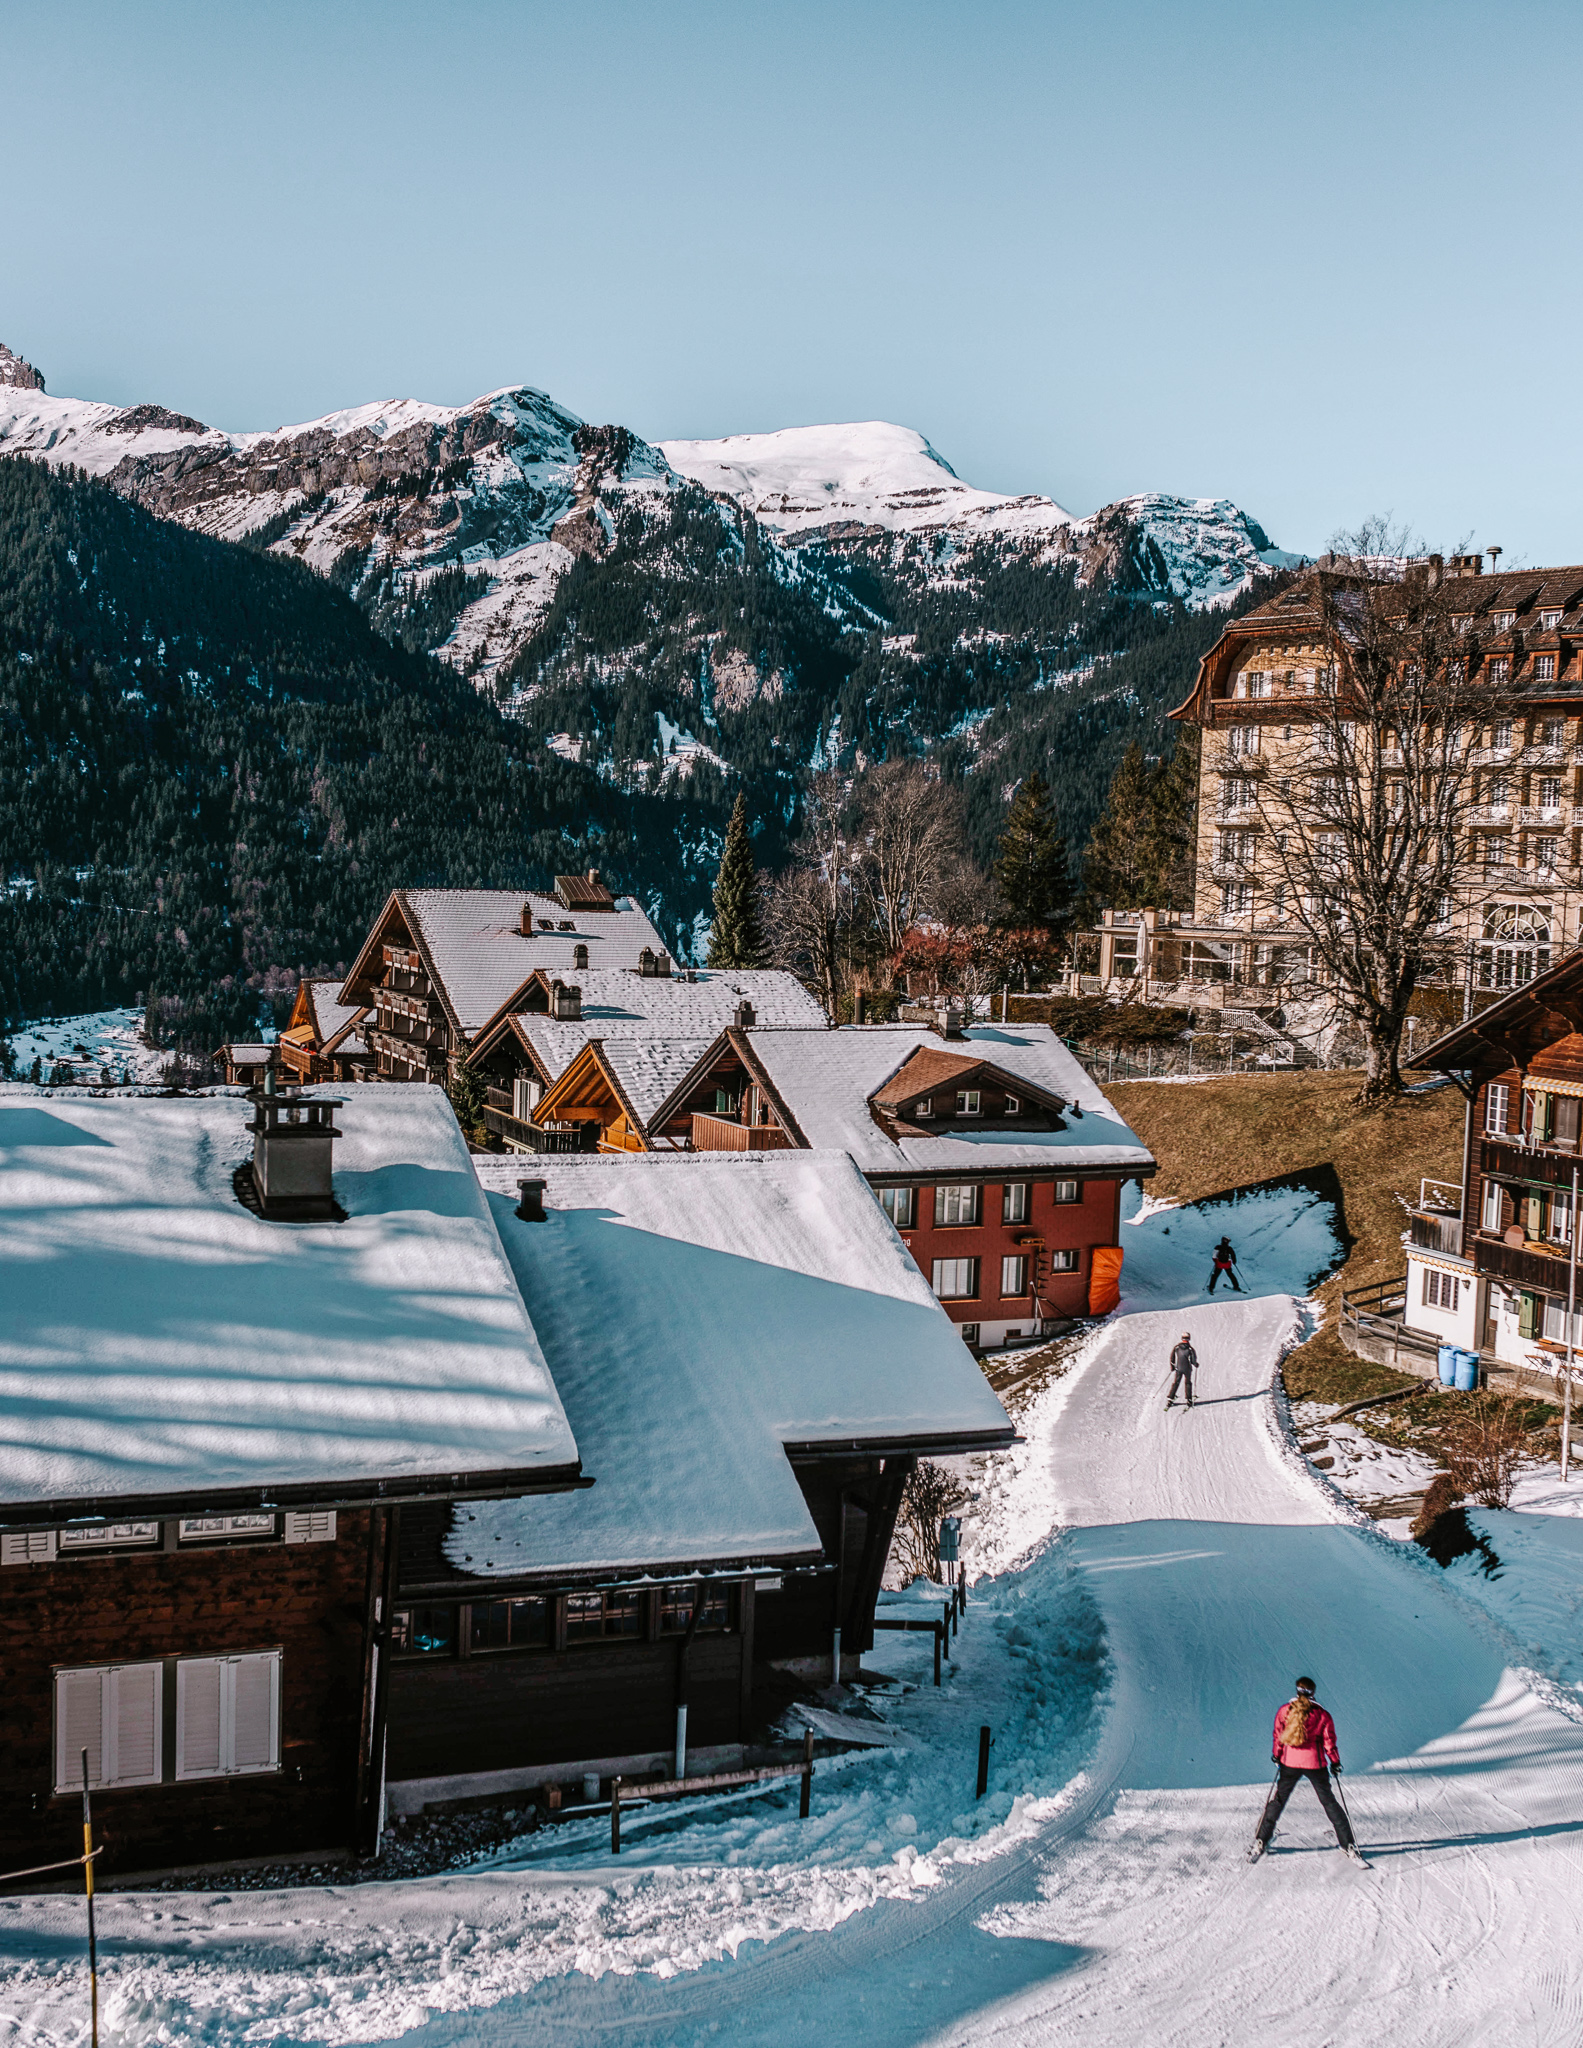 People cross-country skiing in a village near Lauterbrunnen in winter